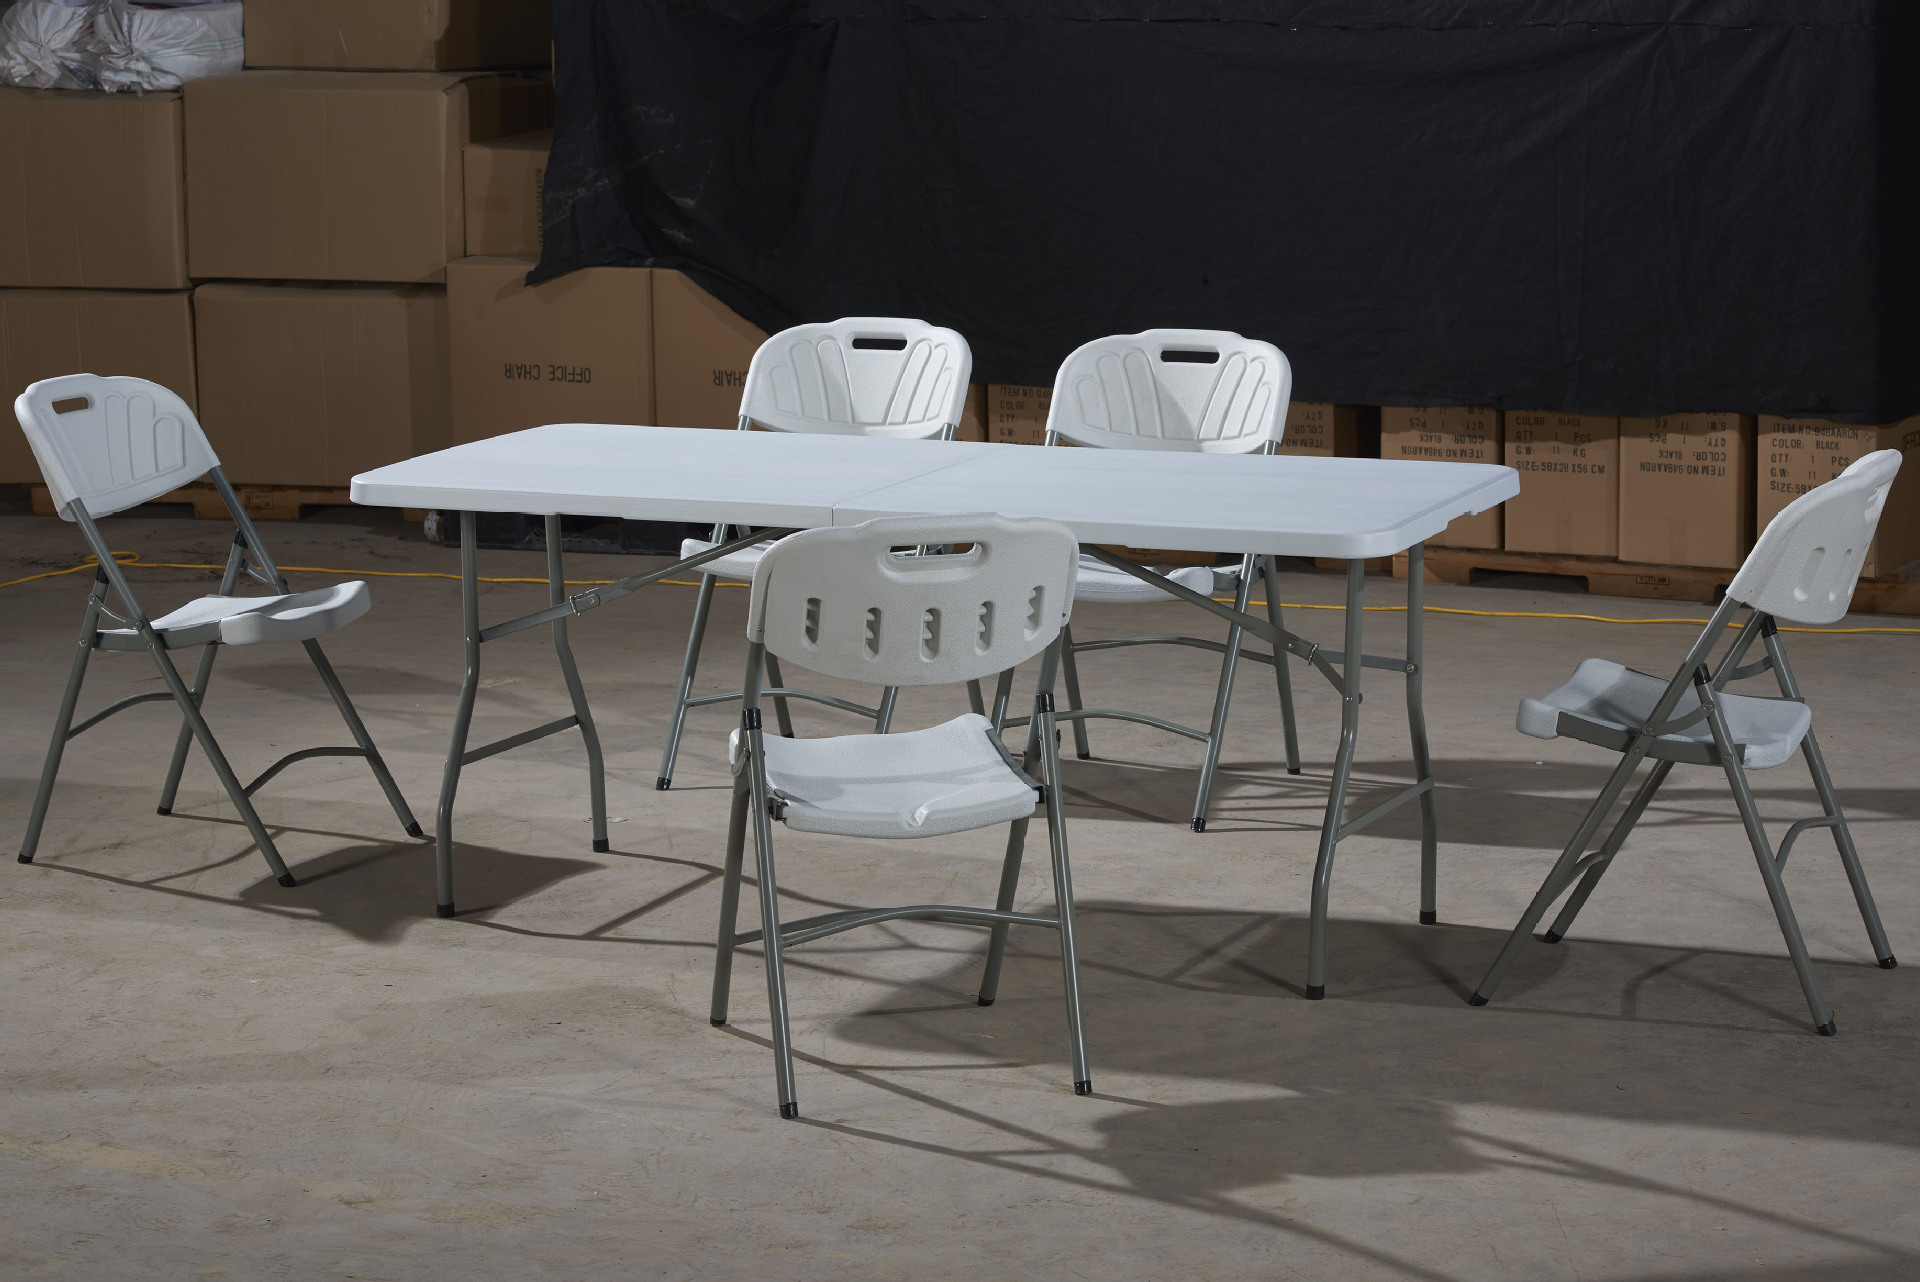 厂家直销简约2.4米长折叠桌多用折叠长条电脑桌长桌子 简约